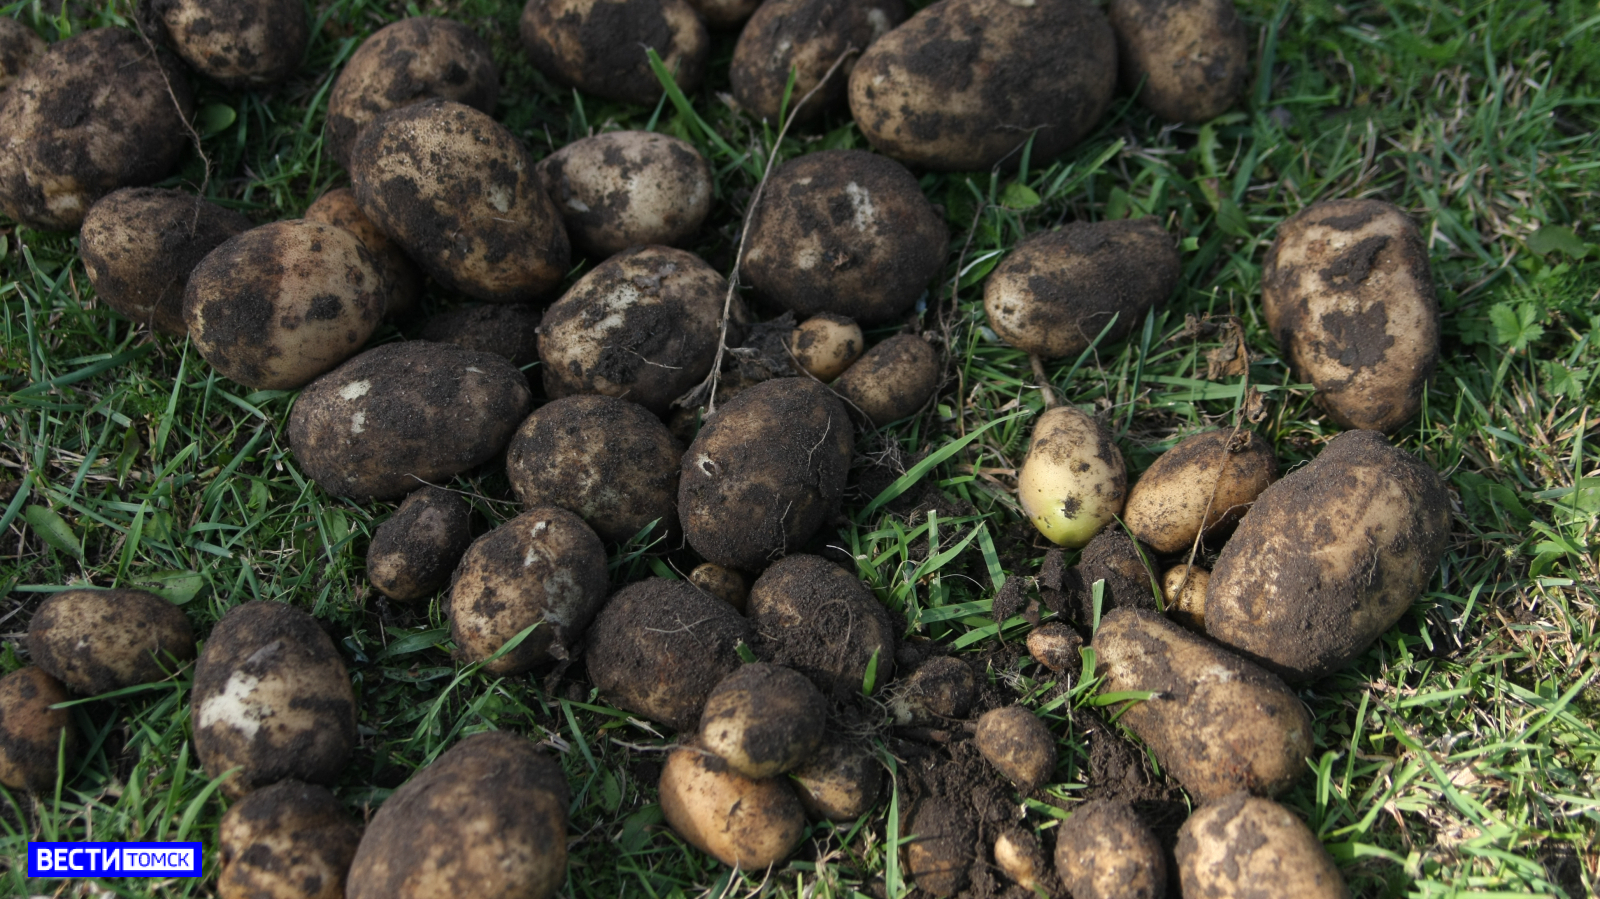 Как правильно хранить картофель зимой: советы специалистов